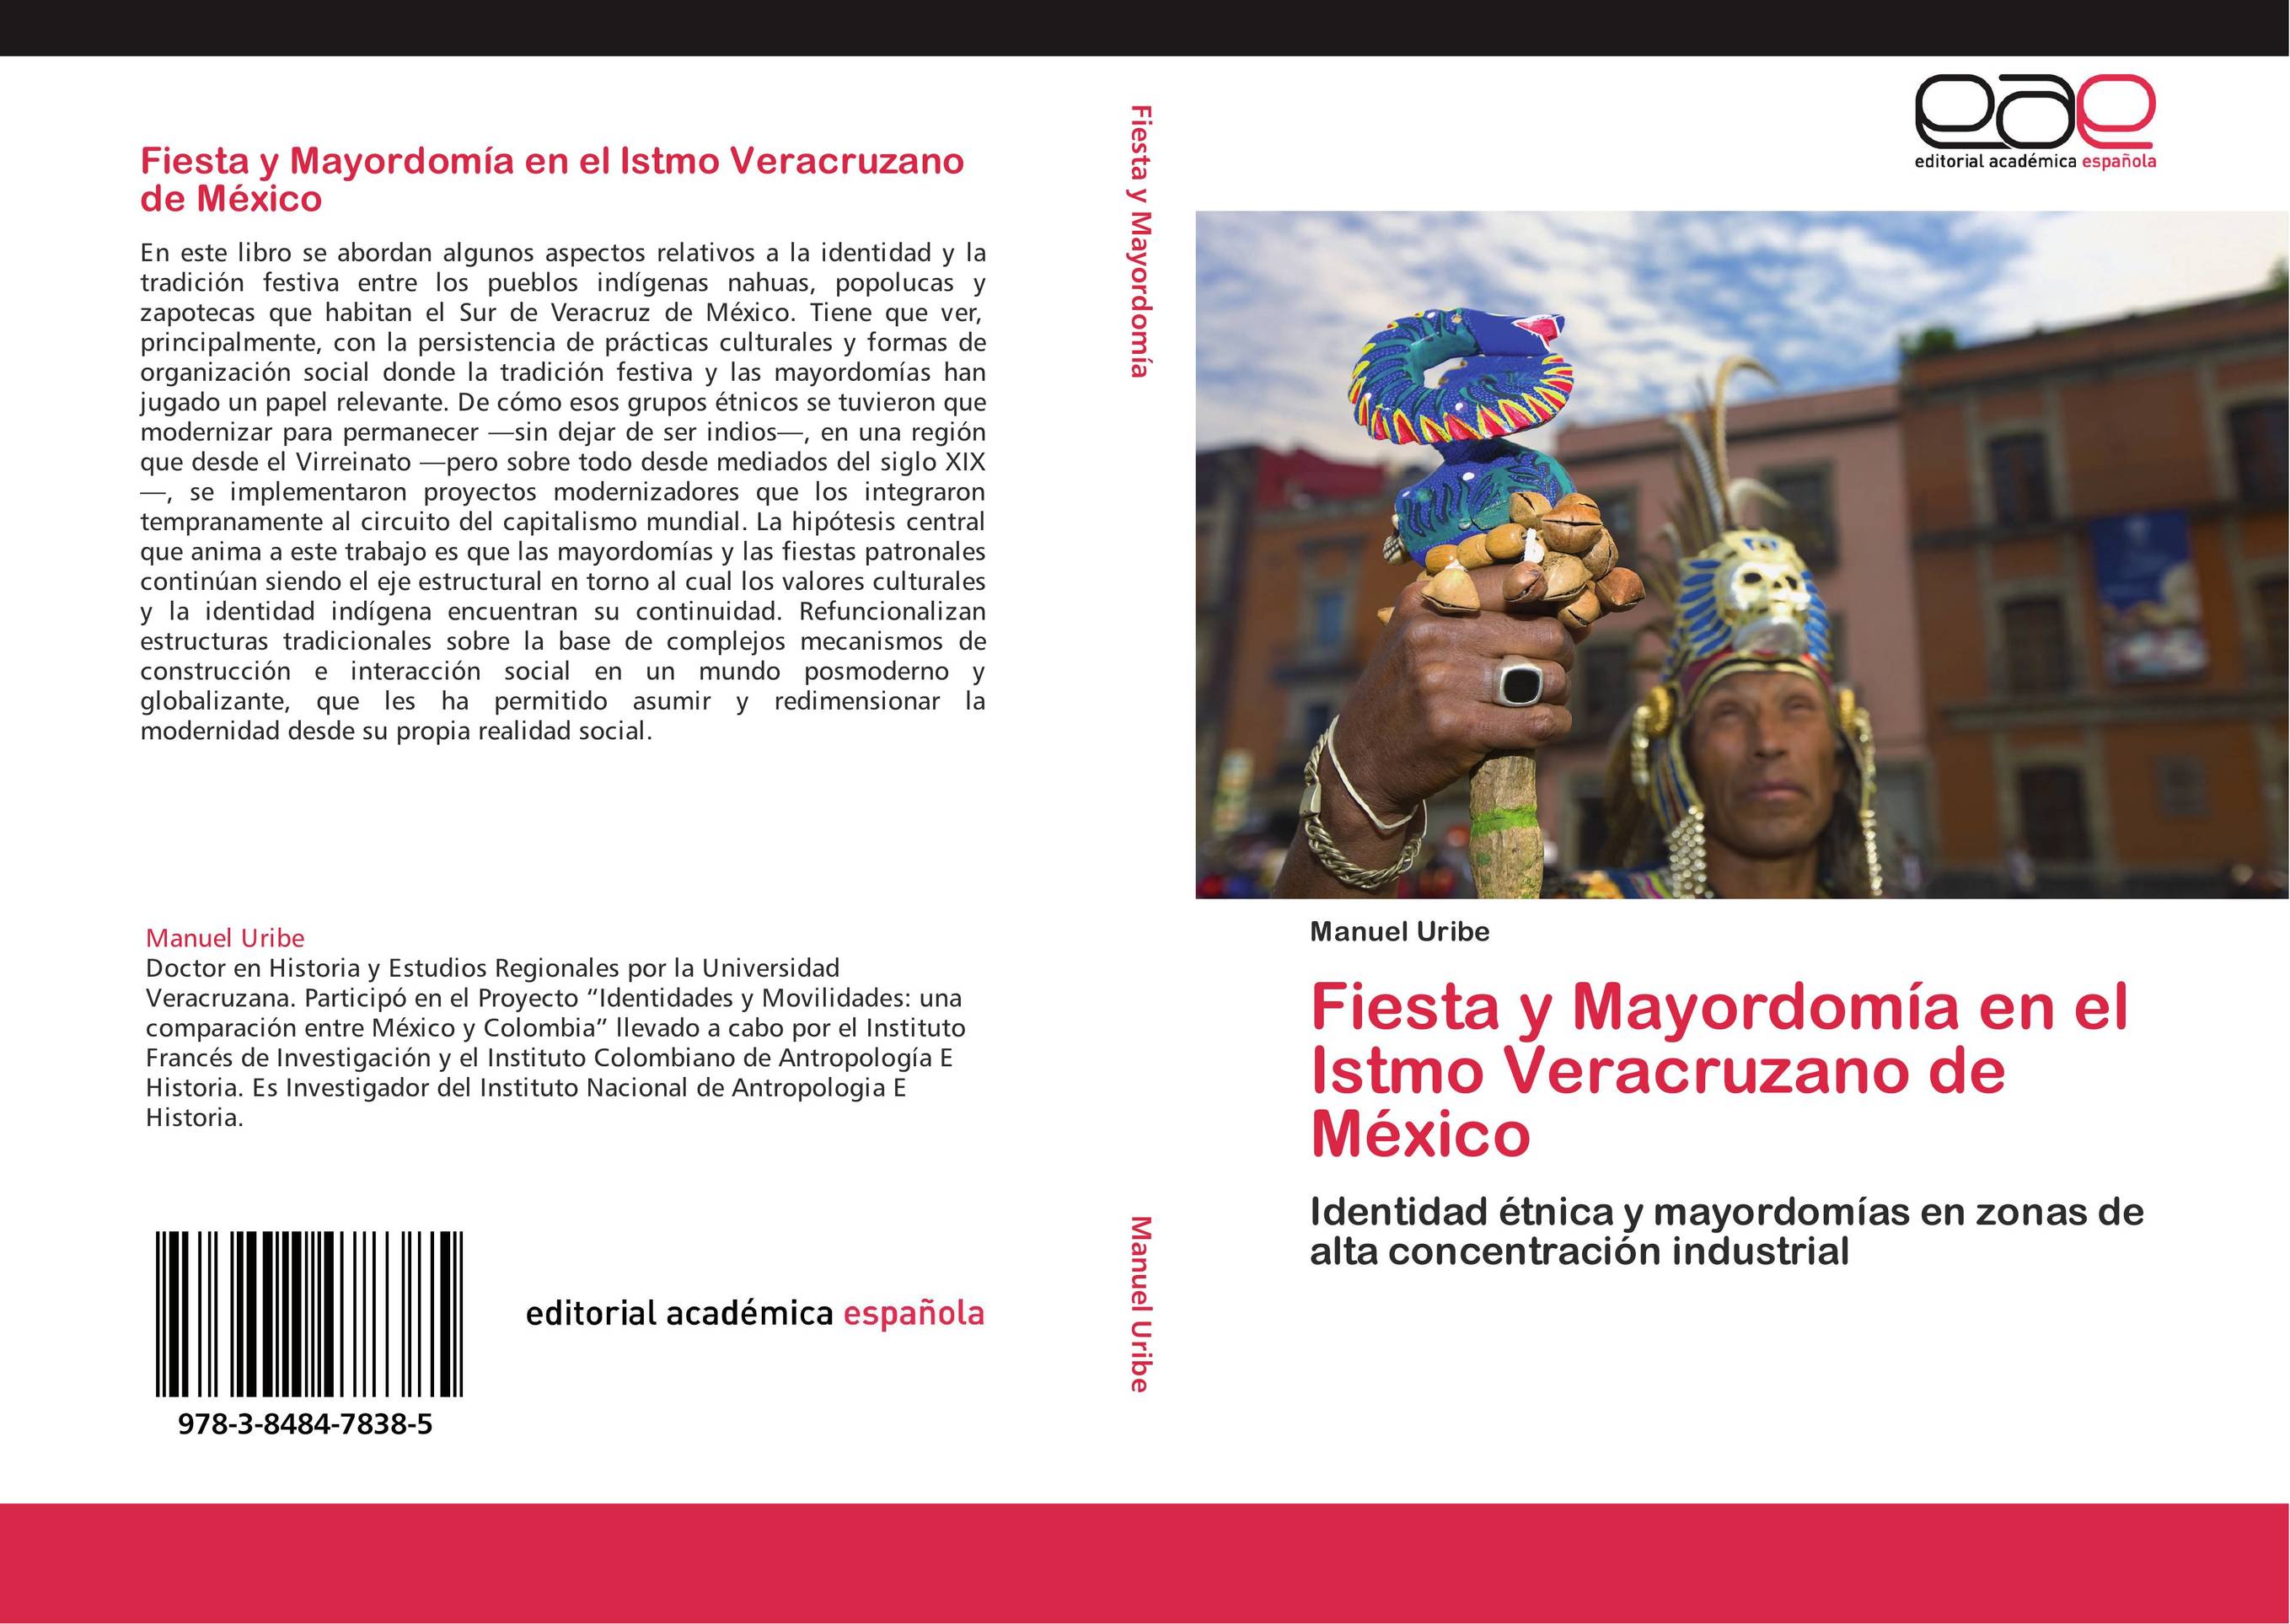 Fiesta y Mayordomía en el Istmo Veracruzano de México